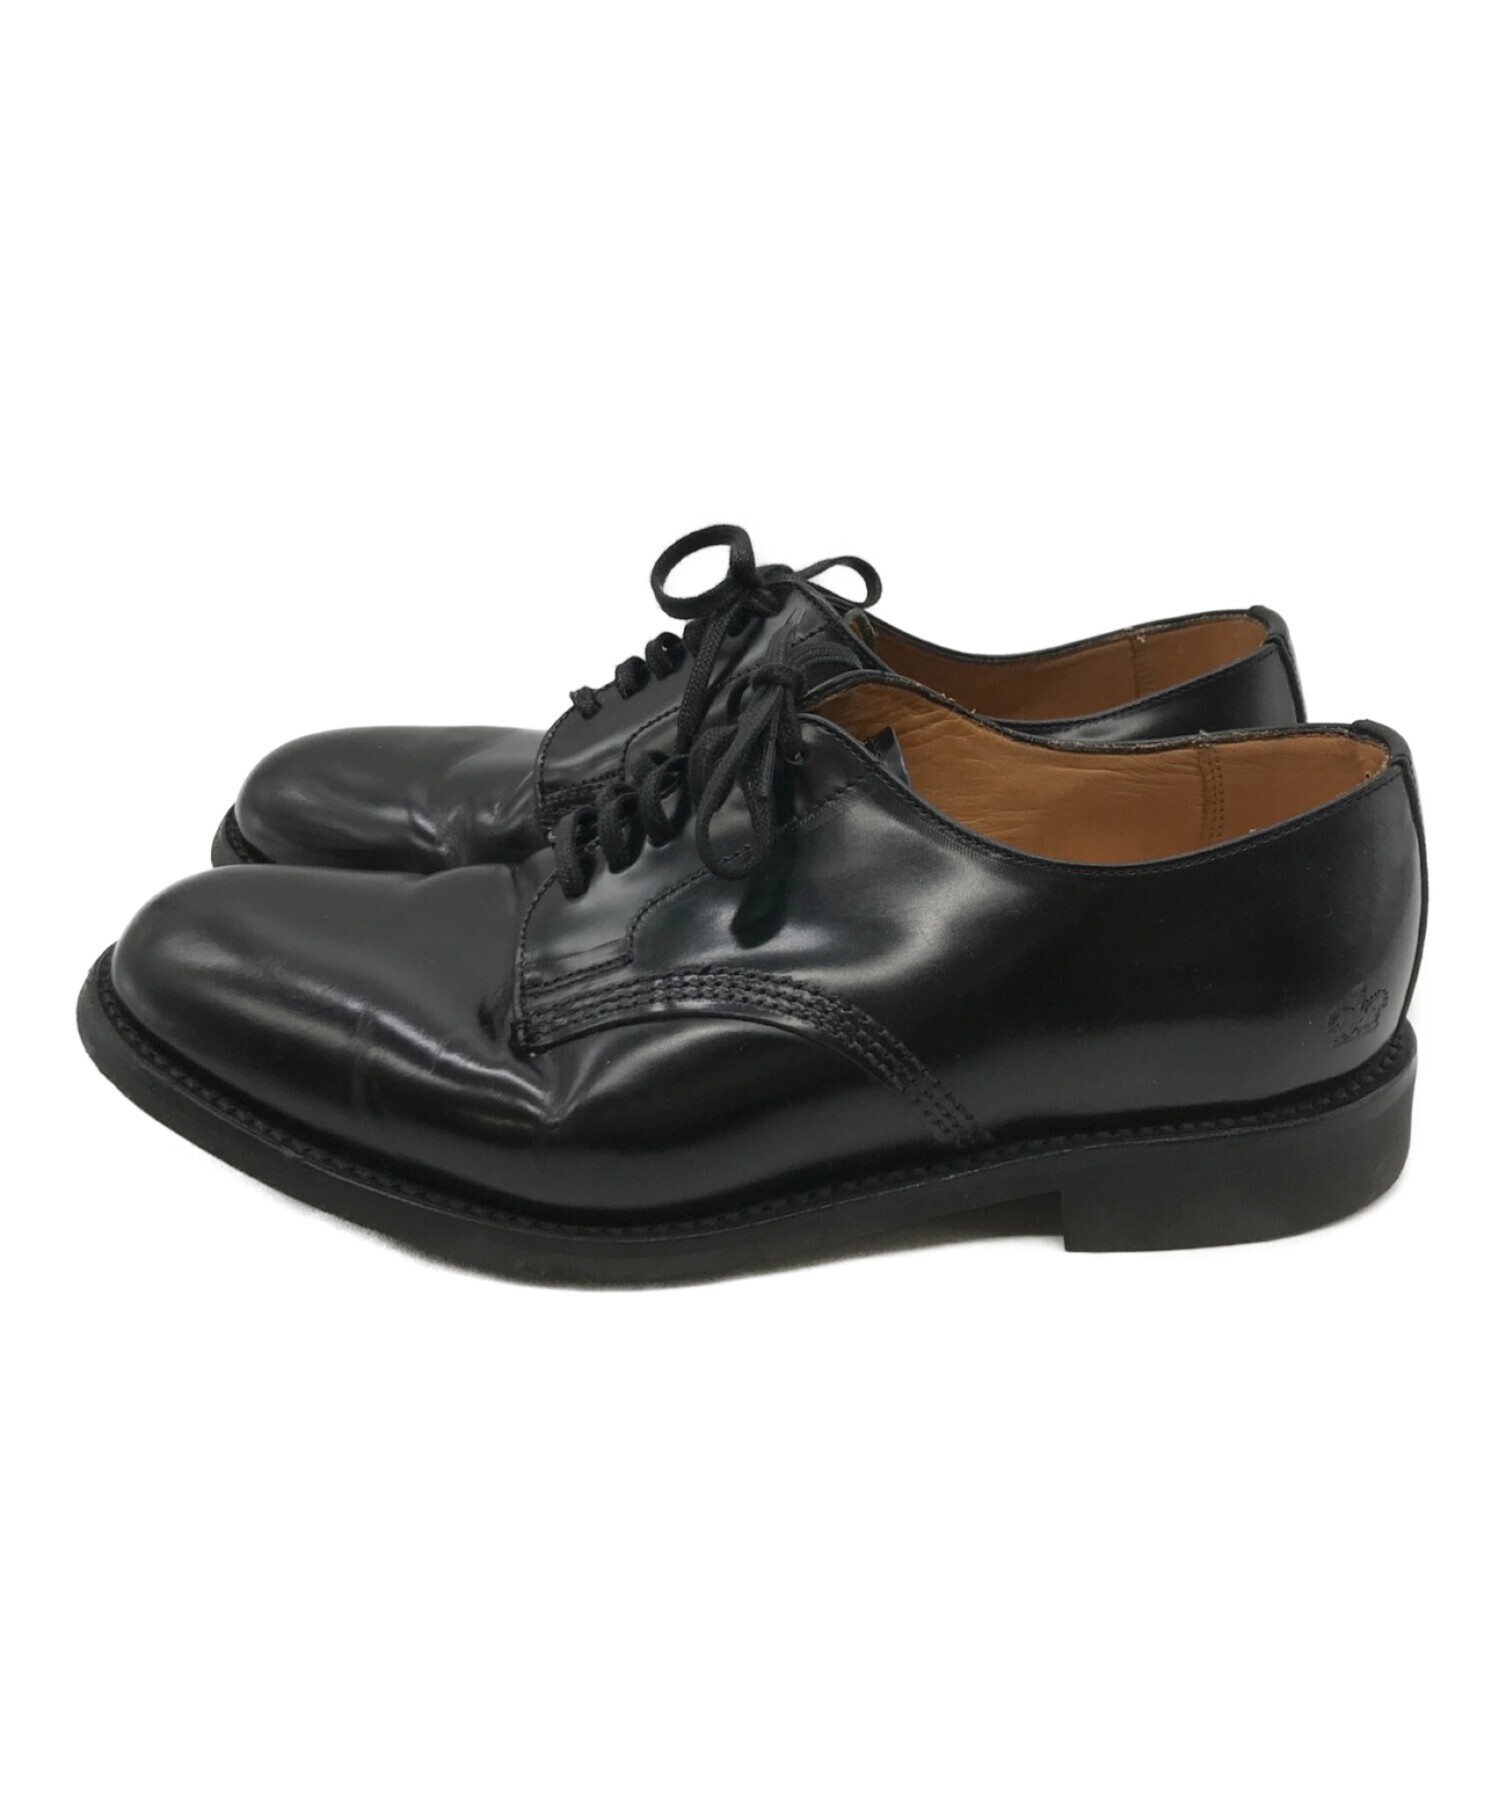 SANDERS (サンダース) Officer Shoe Polishin Leather ブラック サイズ:5 1/2